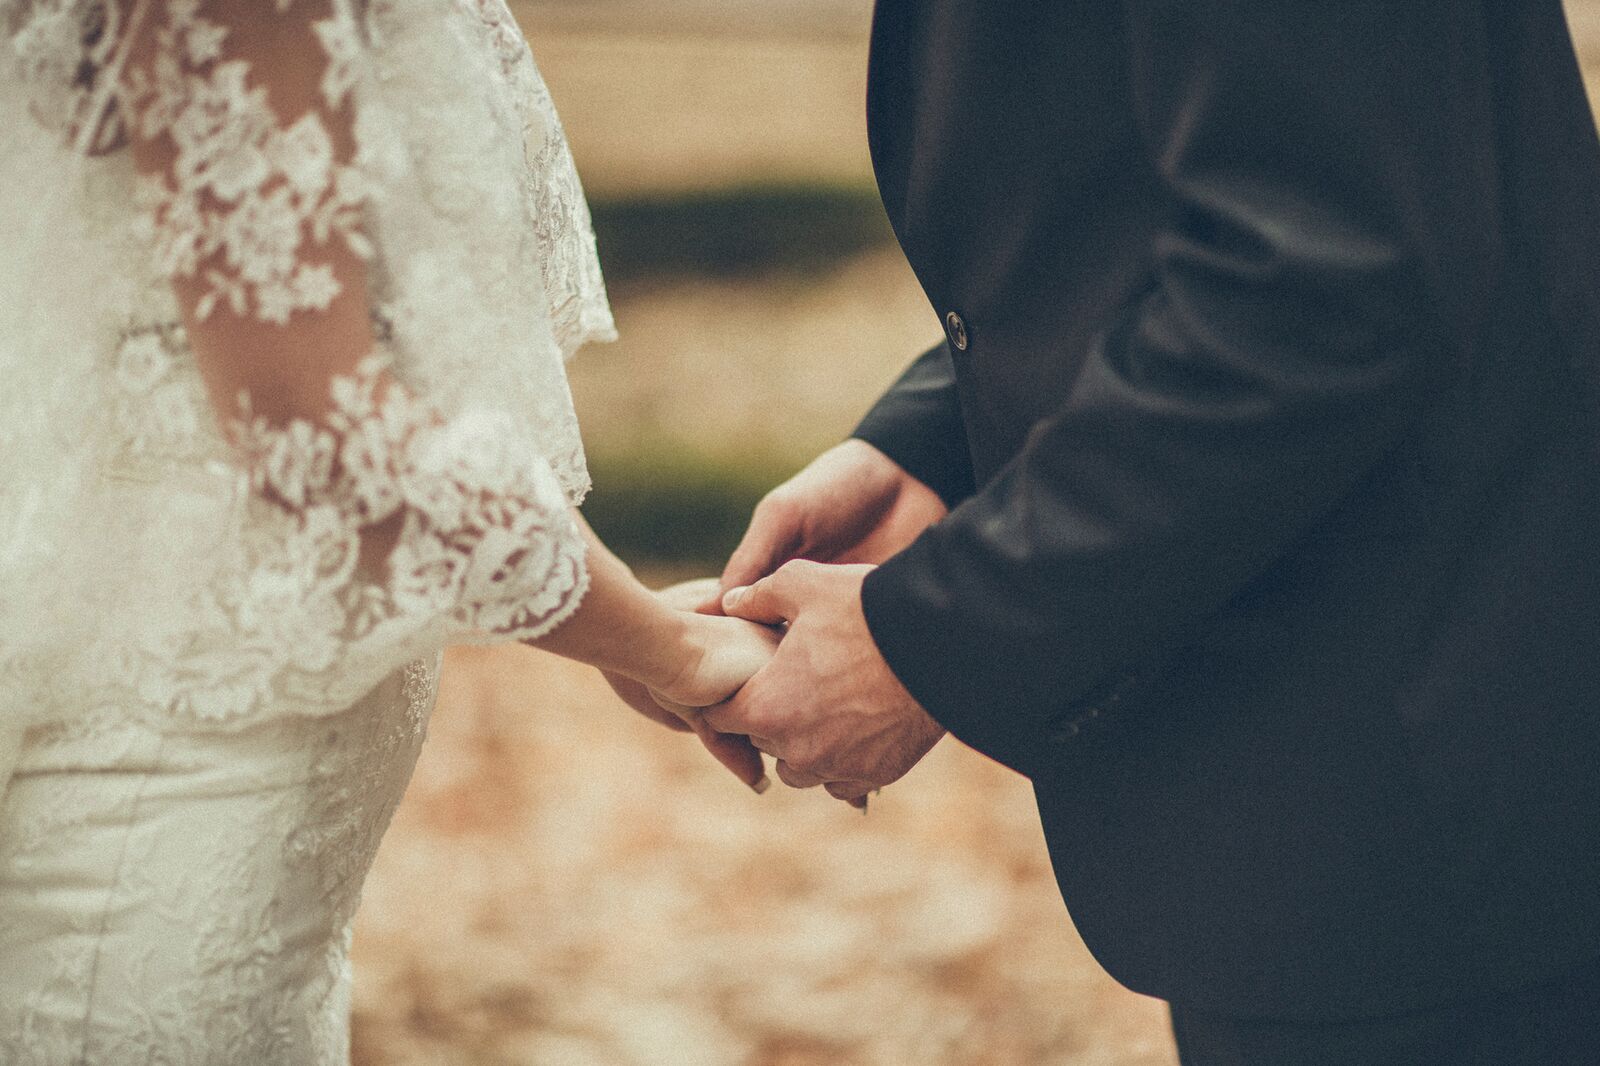 Gi bort en kreativ bryllupsgave – overrask brudeparet med en opplevelse